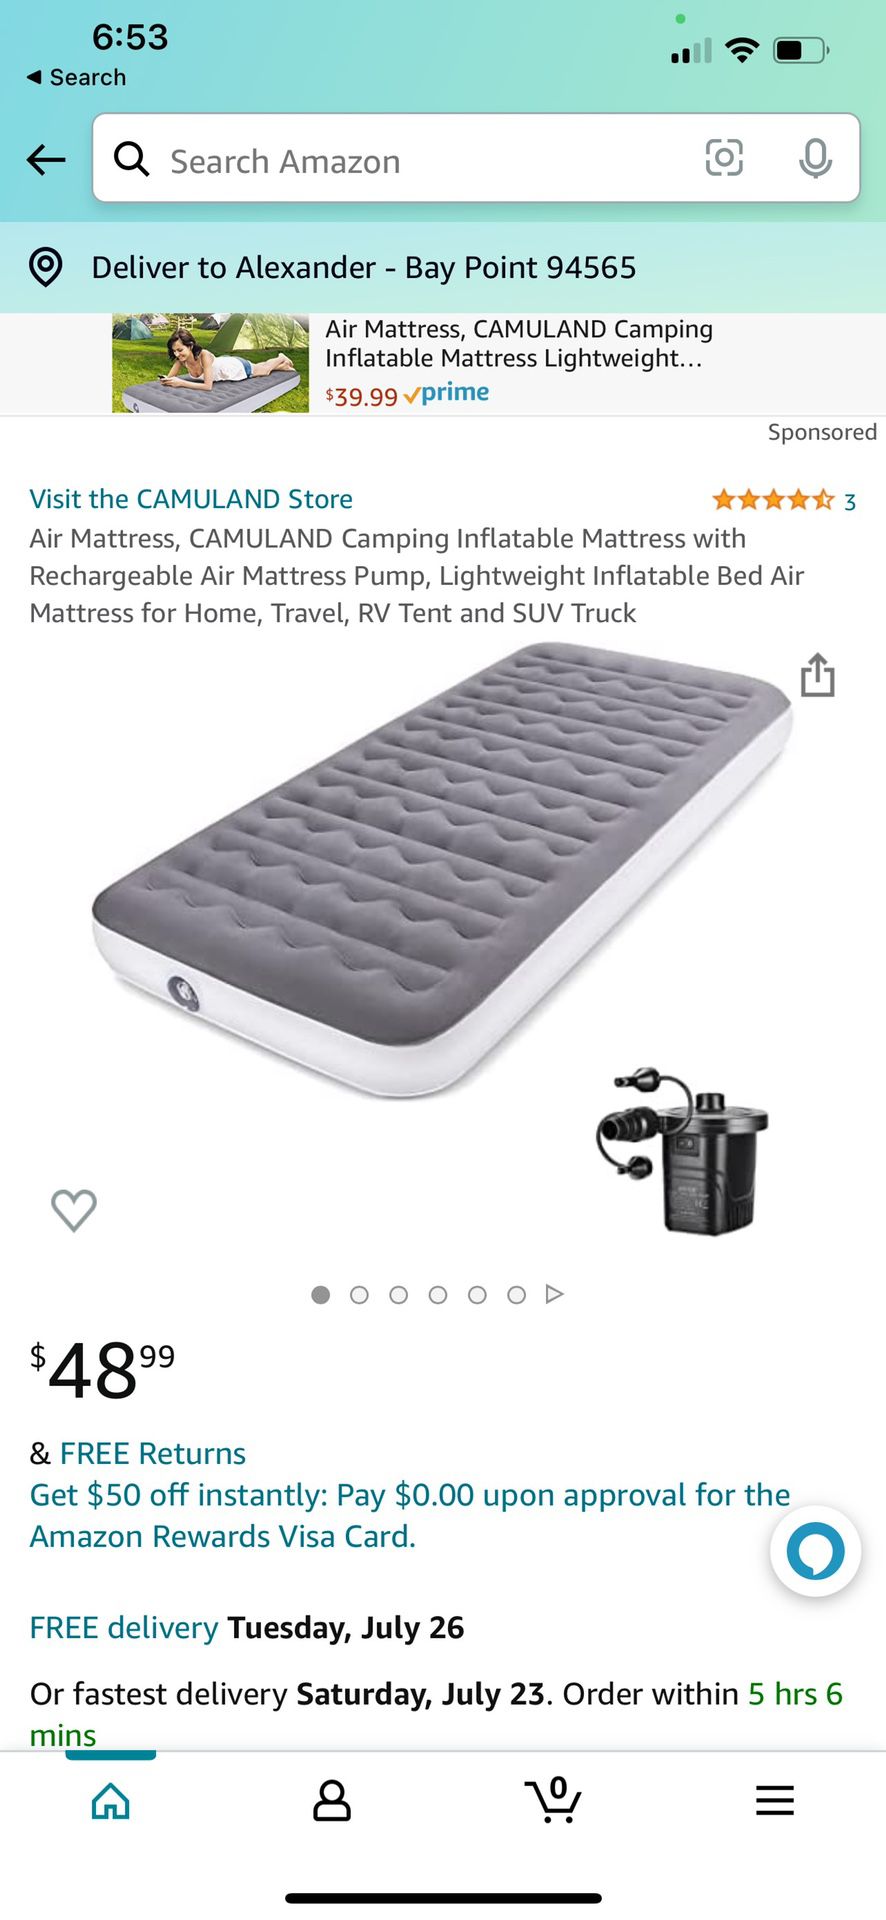 Air mattress camping inflatable mattress with rechargeable air mattress pump